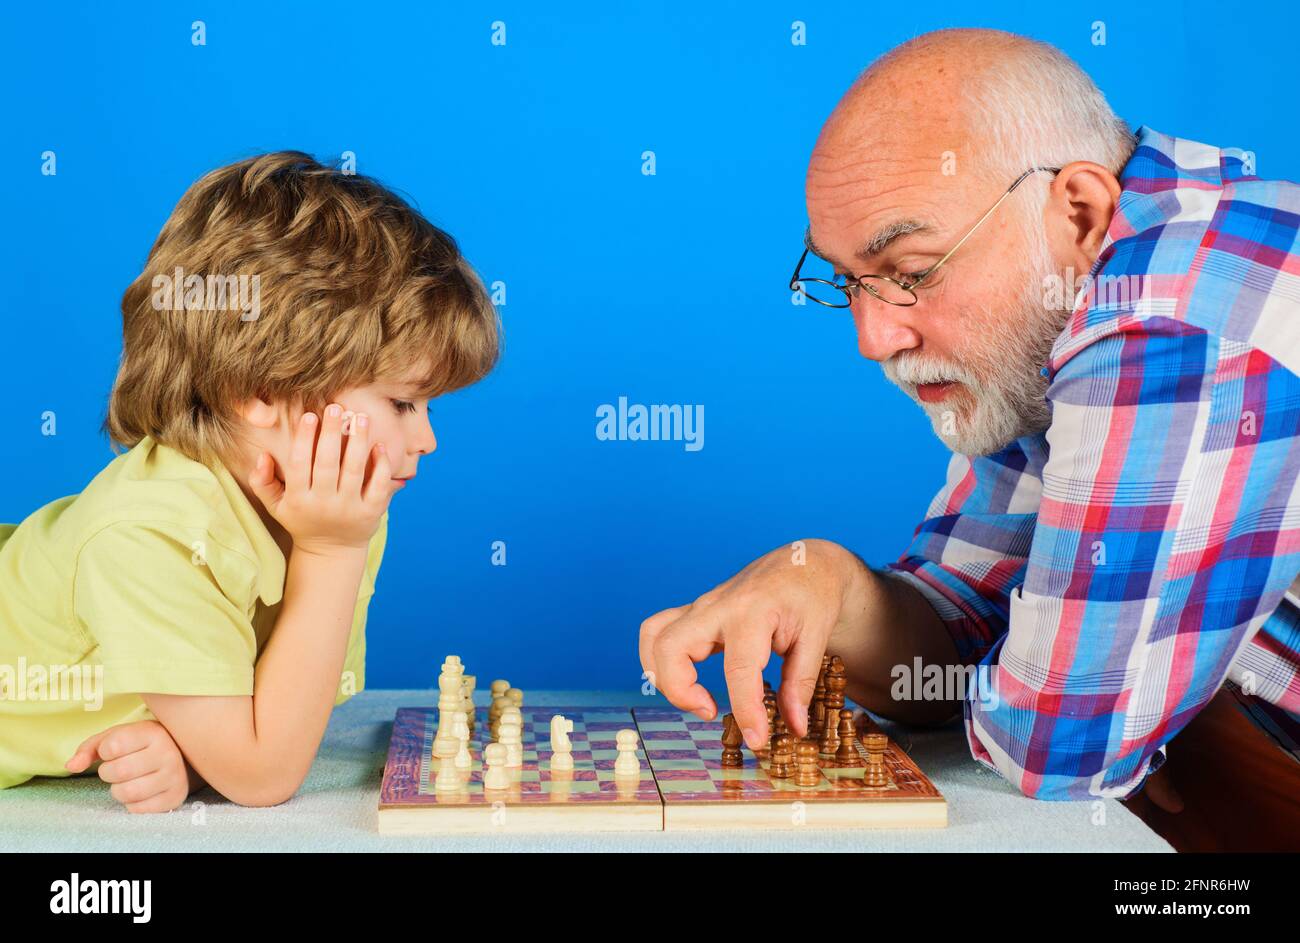 Nieto jugando ajedrez con abuelo. El abuelo que enseña a los nietos a jugar ajedrez. Relación familiar. Foto de stock